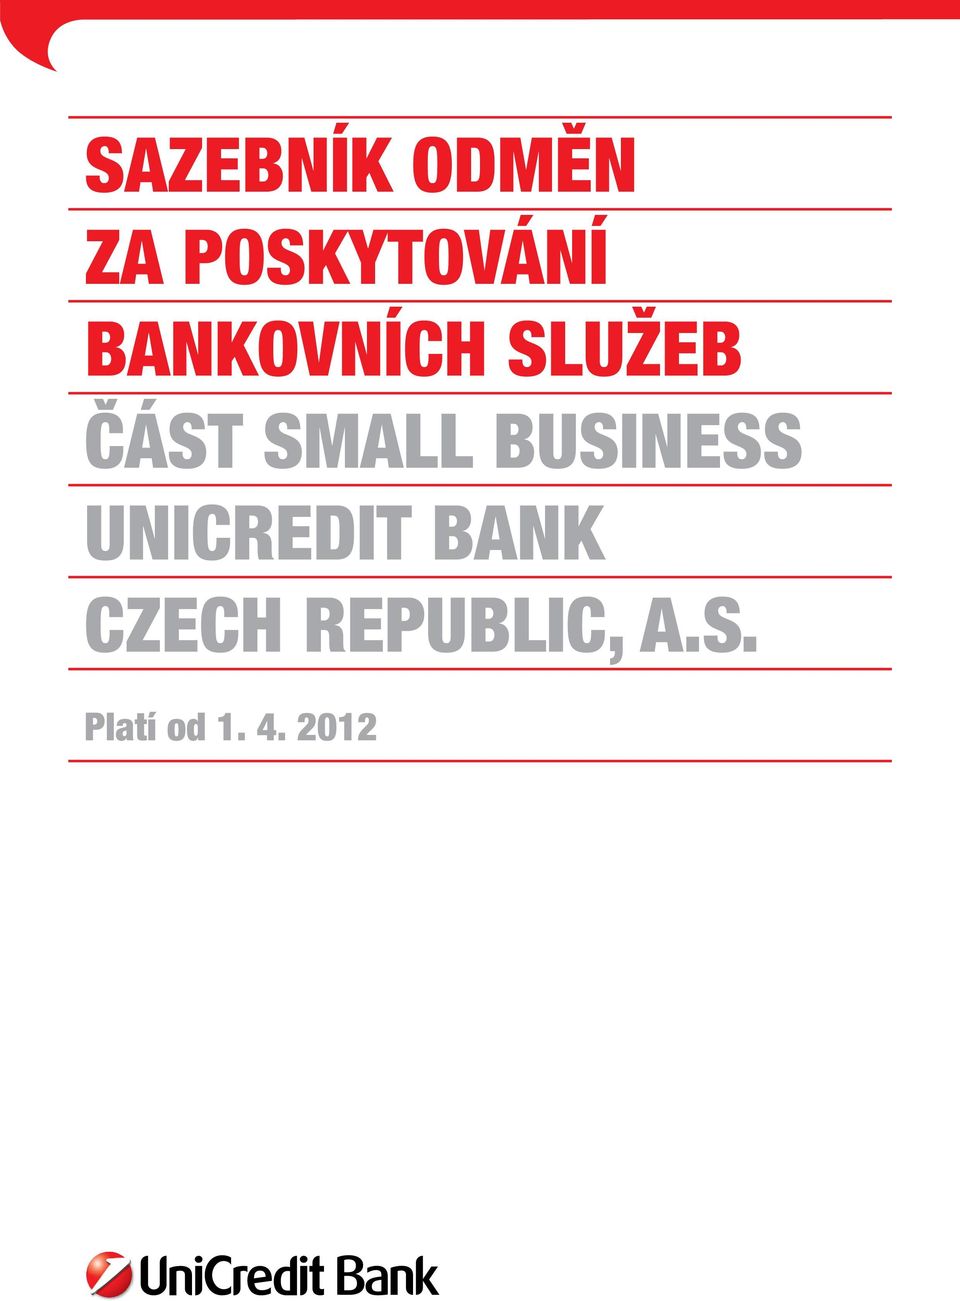 BUSINESS UNICREDIT BANK CZECH